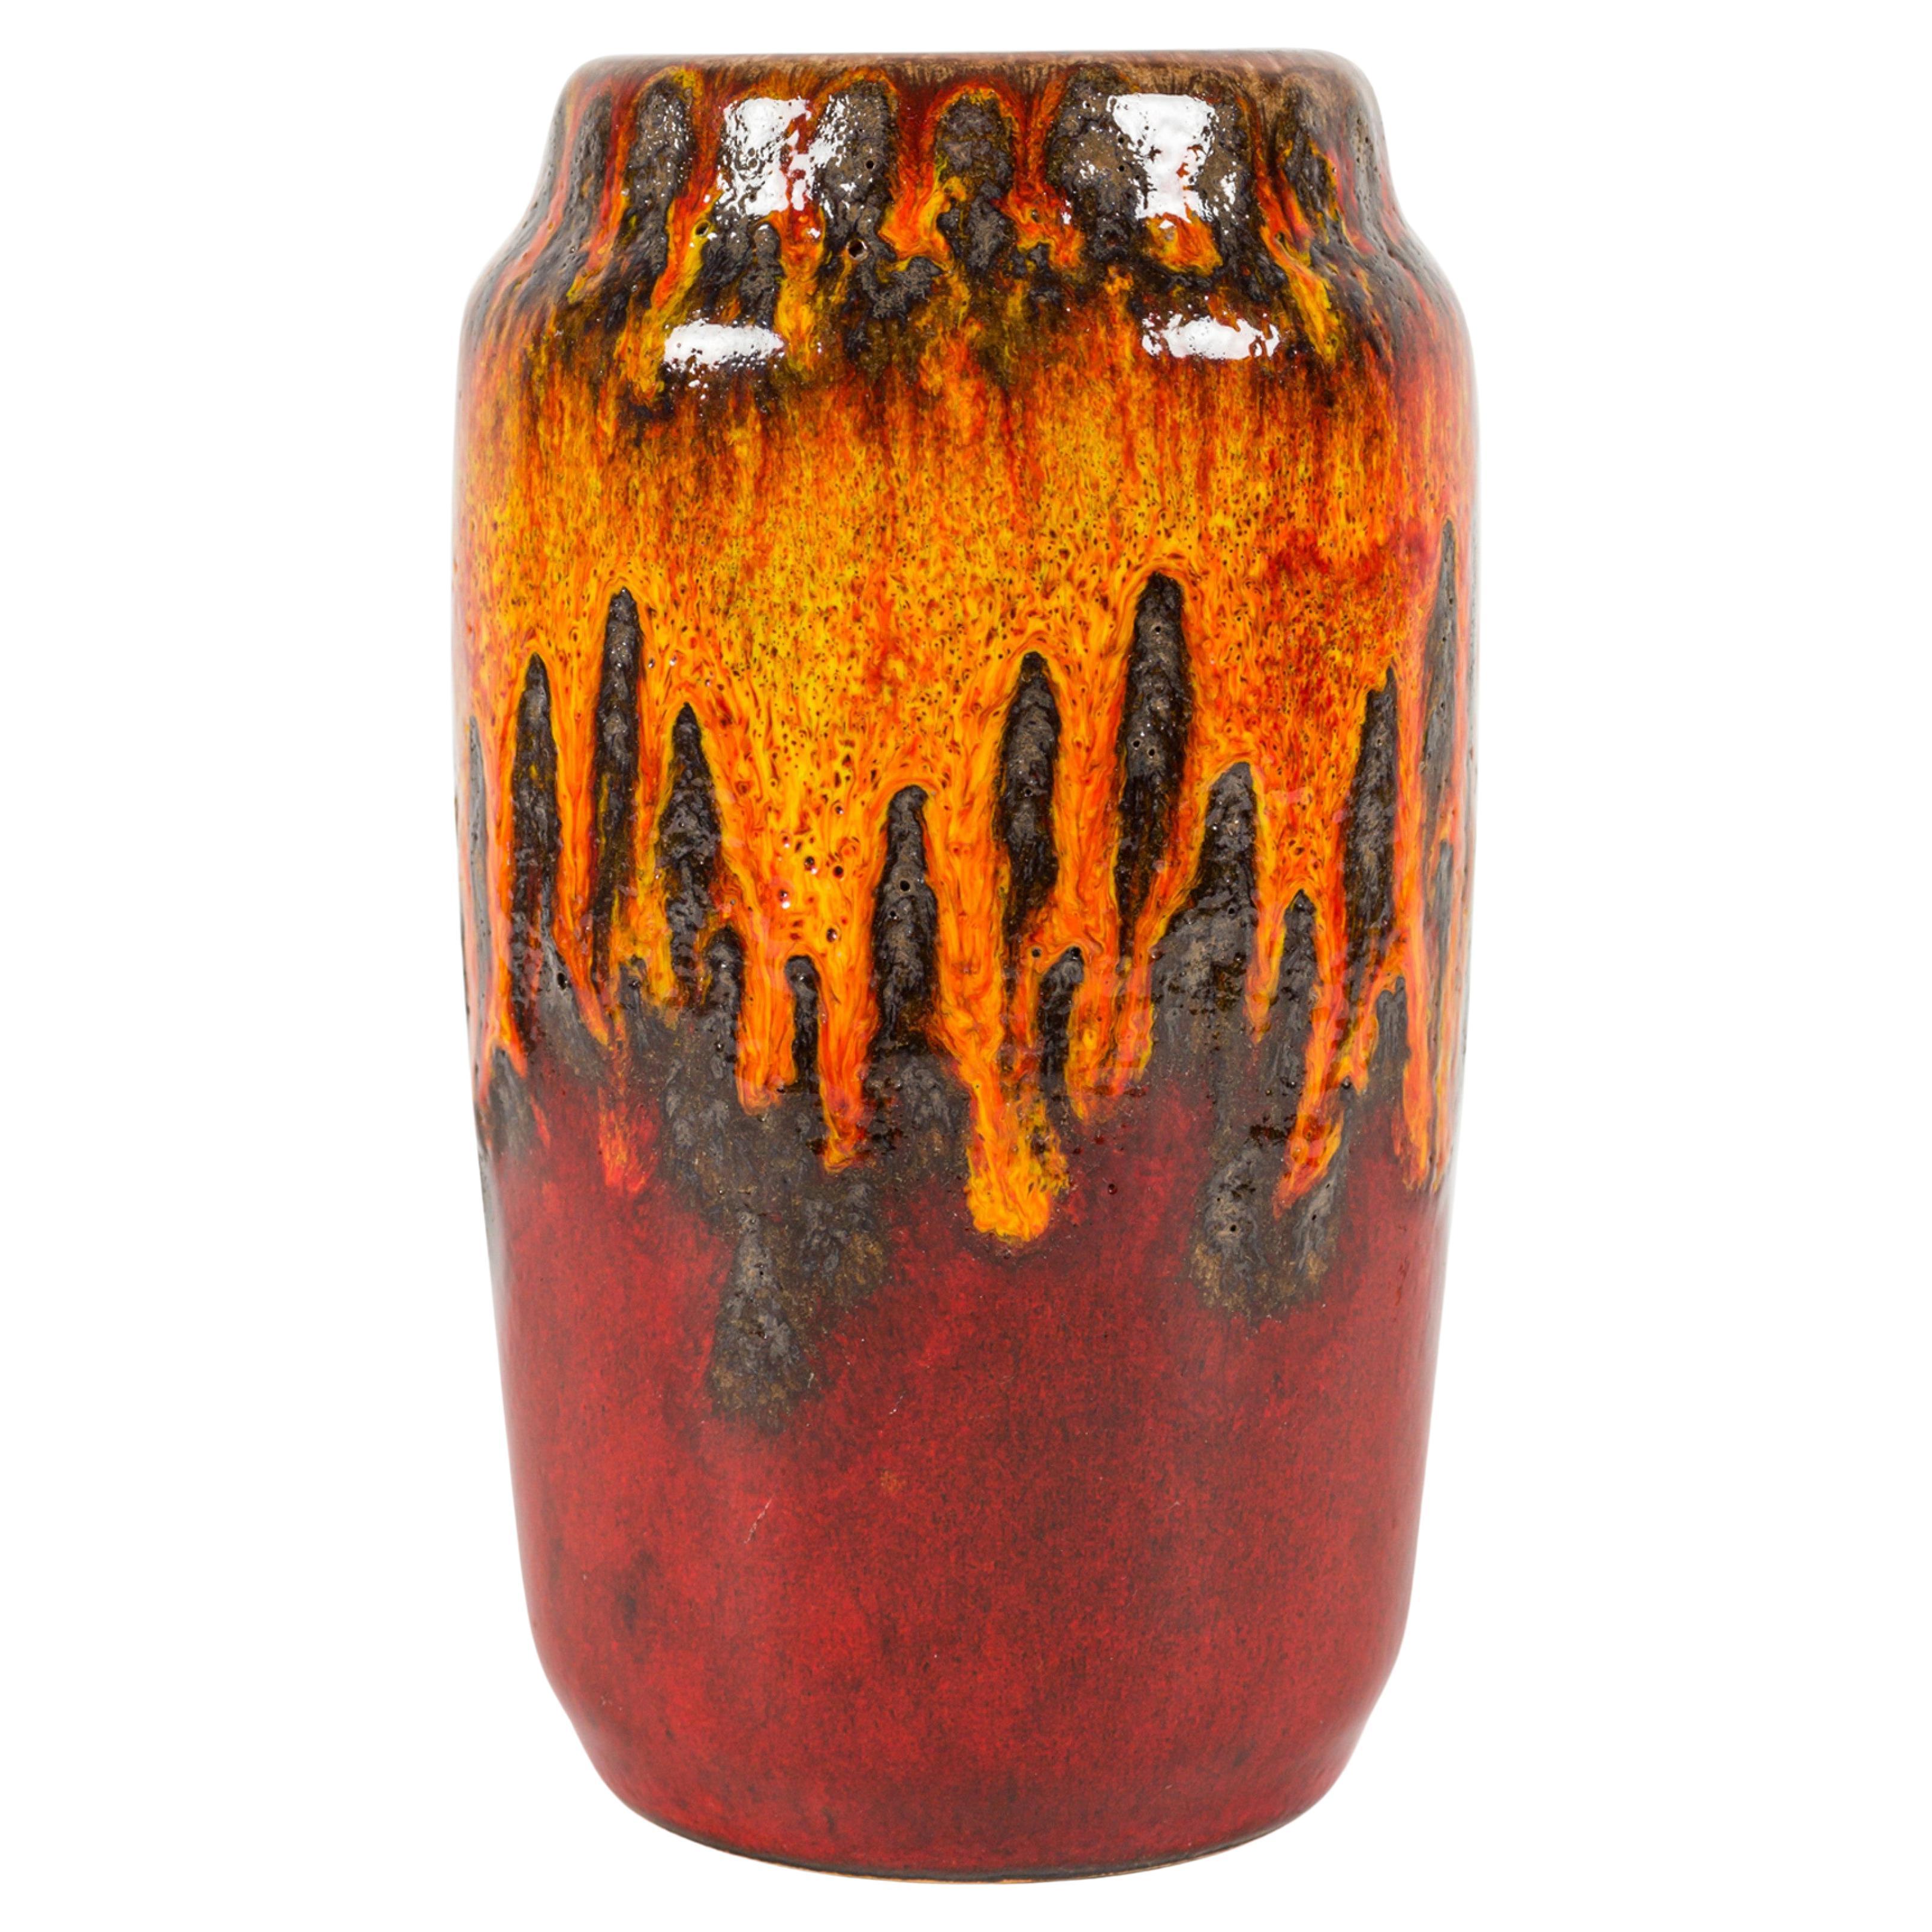 Scheurich Keramik West German Fat Lava Orange Black and Red Glazed Ceramic Vase